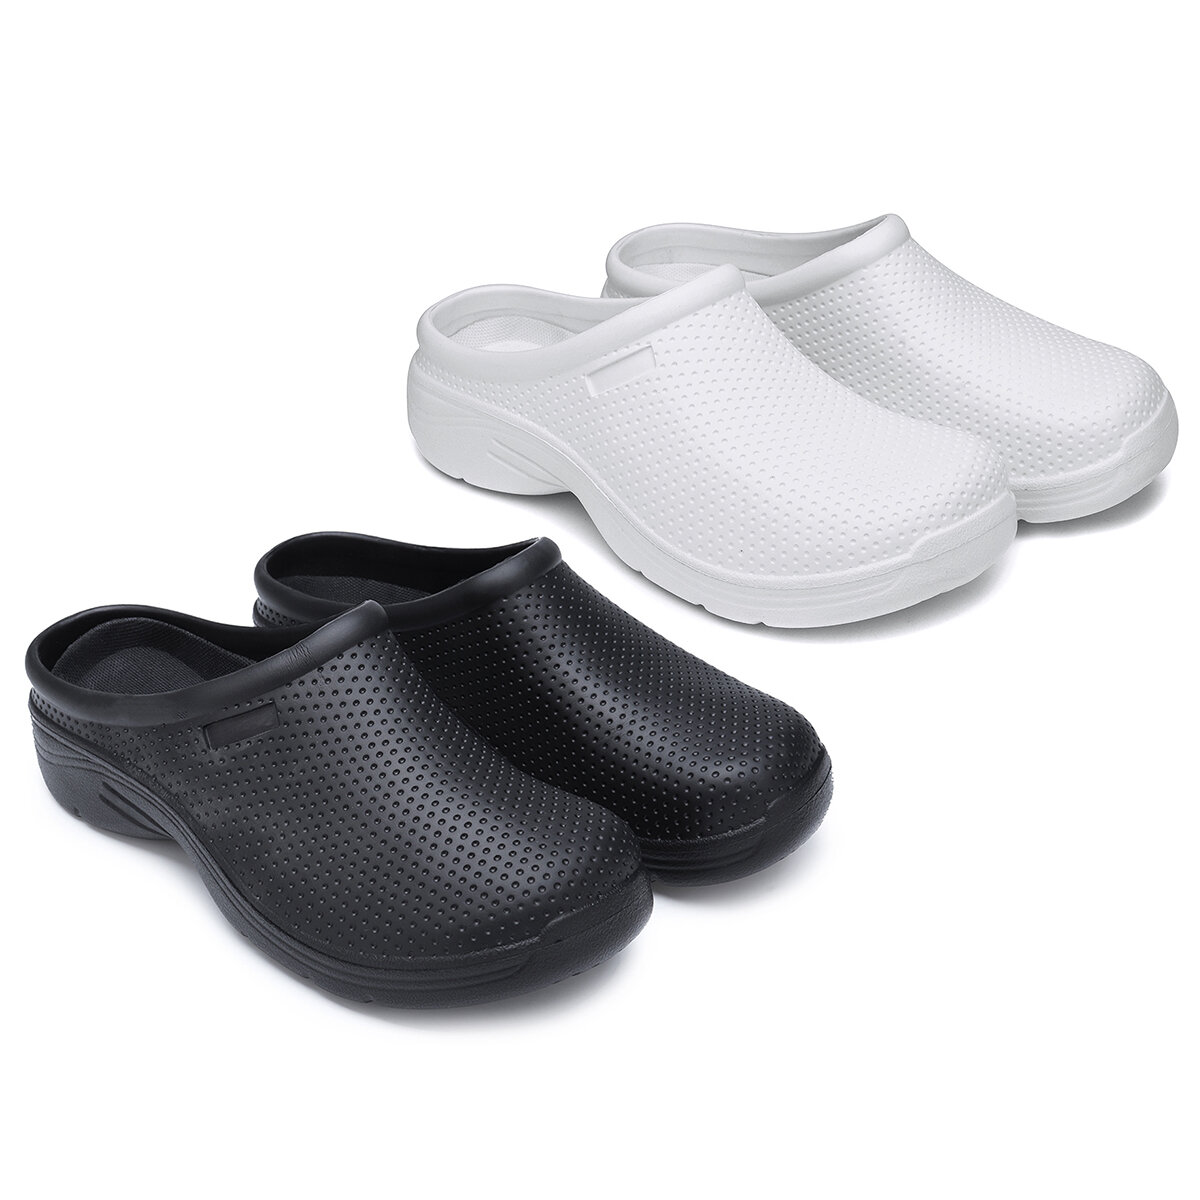 Θερινά σανδάλια AtreGo EVA Αδιάβροχα αντιολισθητικά παπούτσια για εσωτερικούς χώρους παραλίας Γυναικεία παπούτσια